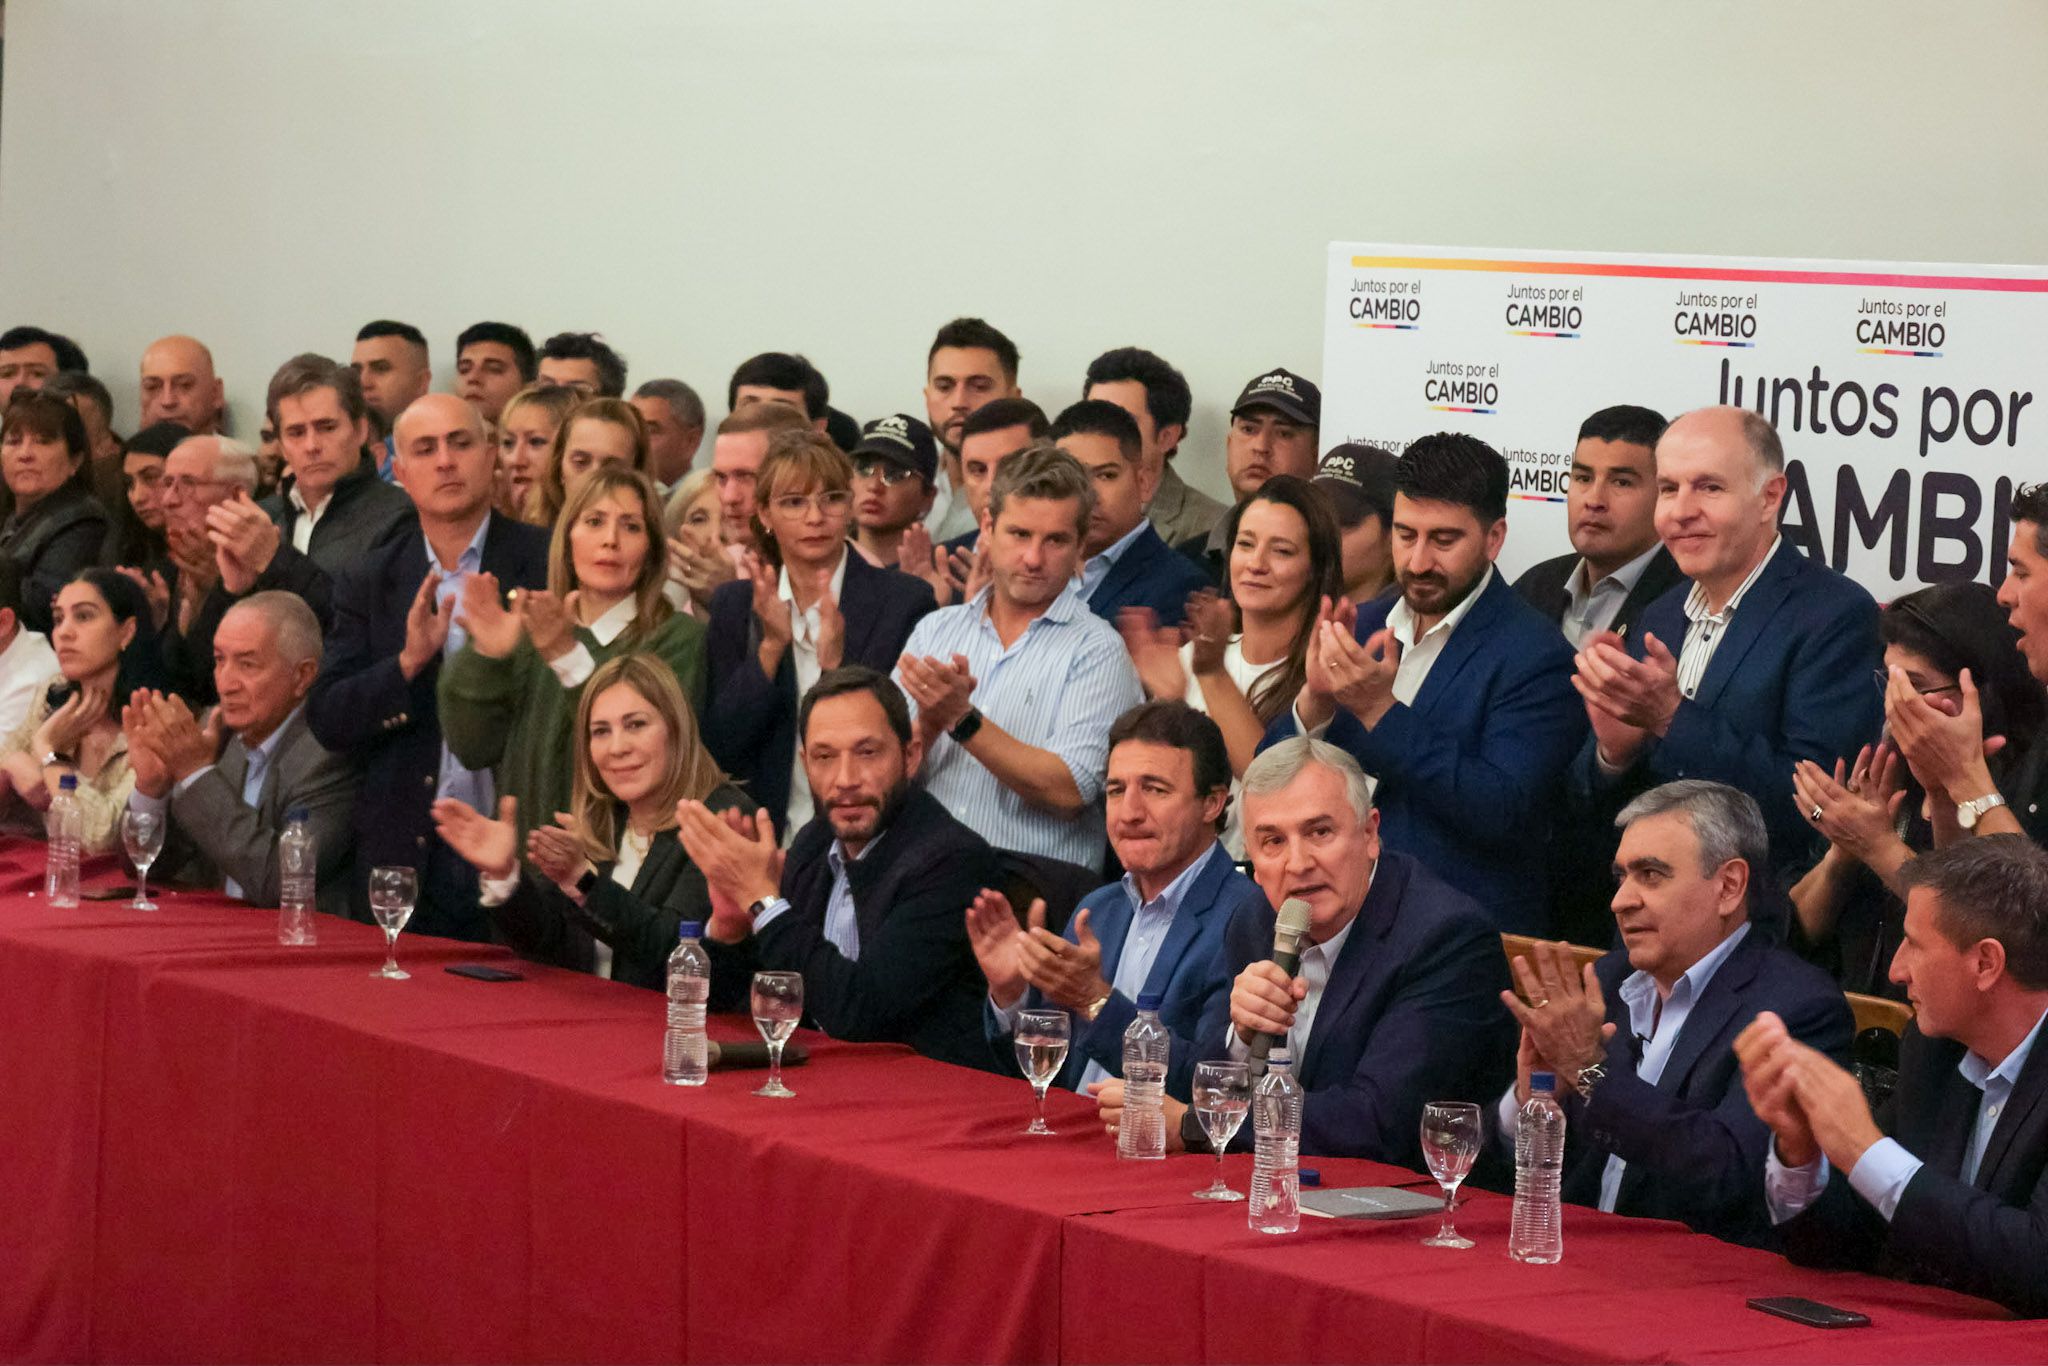 Referentes de JxC dieron una muestra de fuerza y unidad en Tucumán al compartir un acto juntos luego del fallo de la Corte que suspendió las elecciones. (Foto: Twitter: @GerardoMorales)